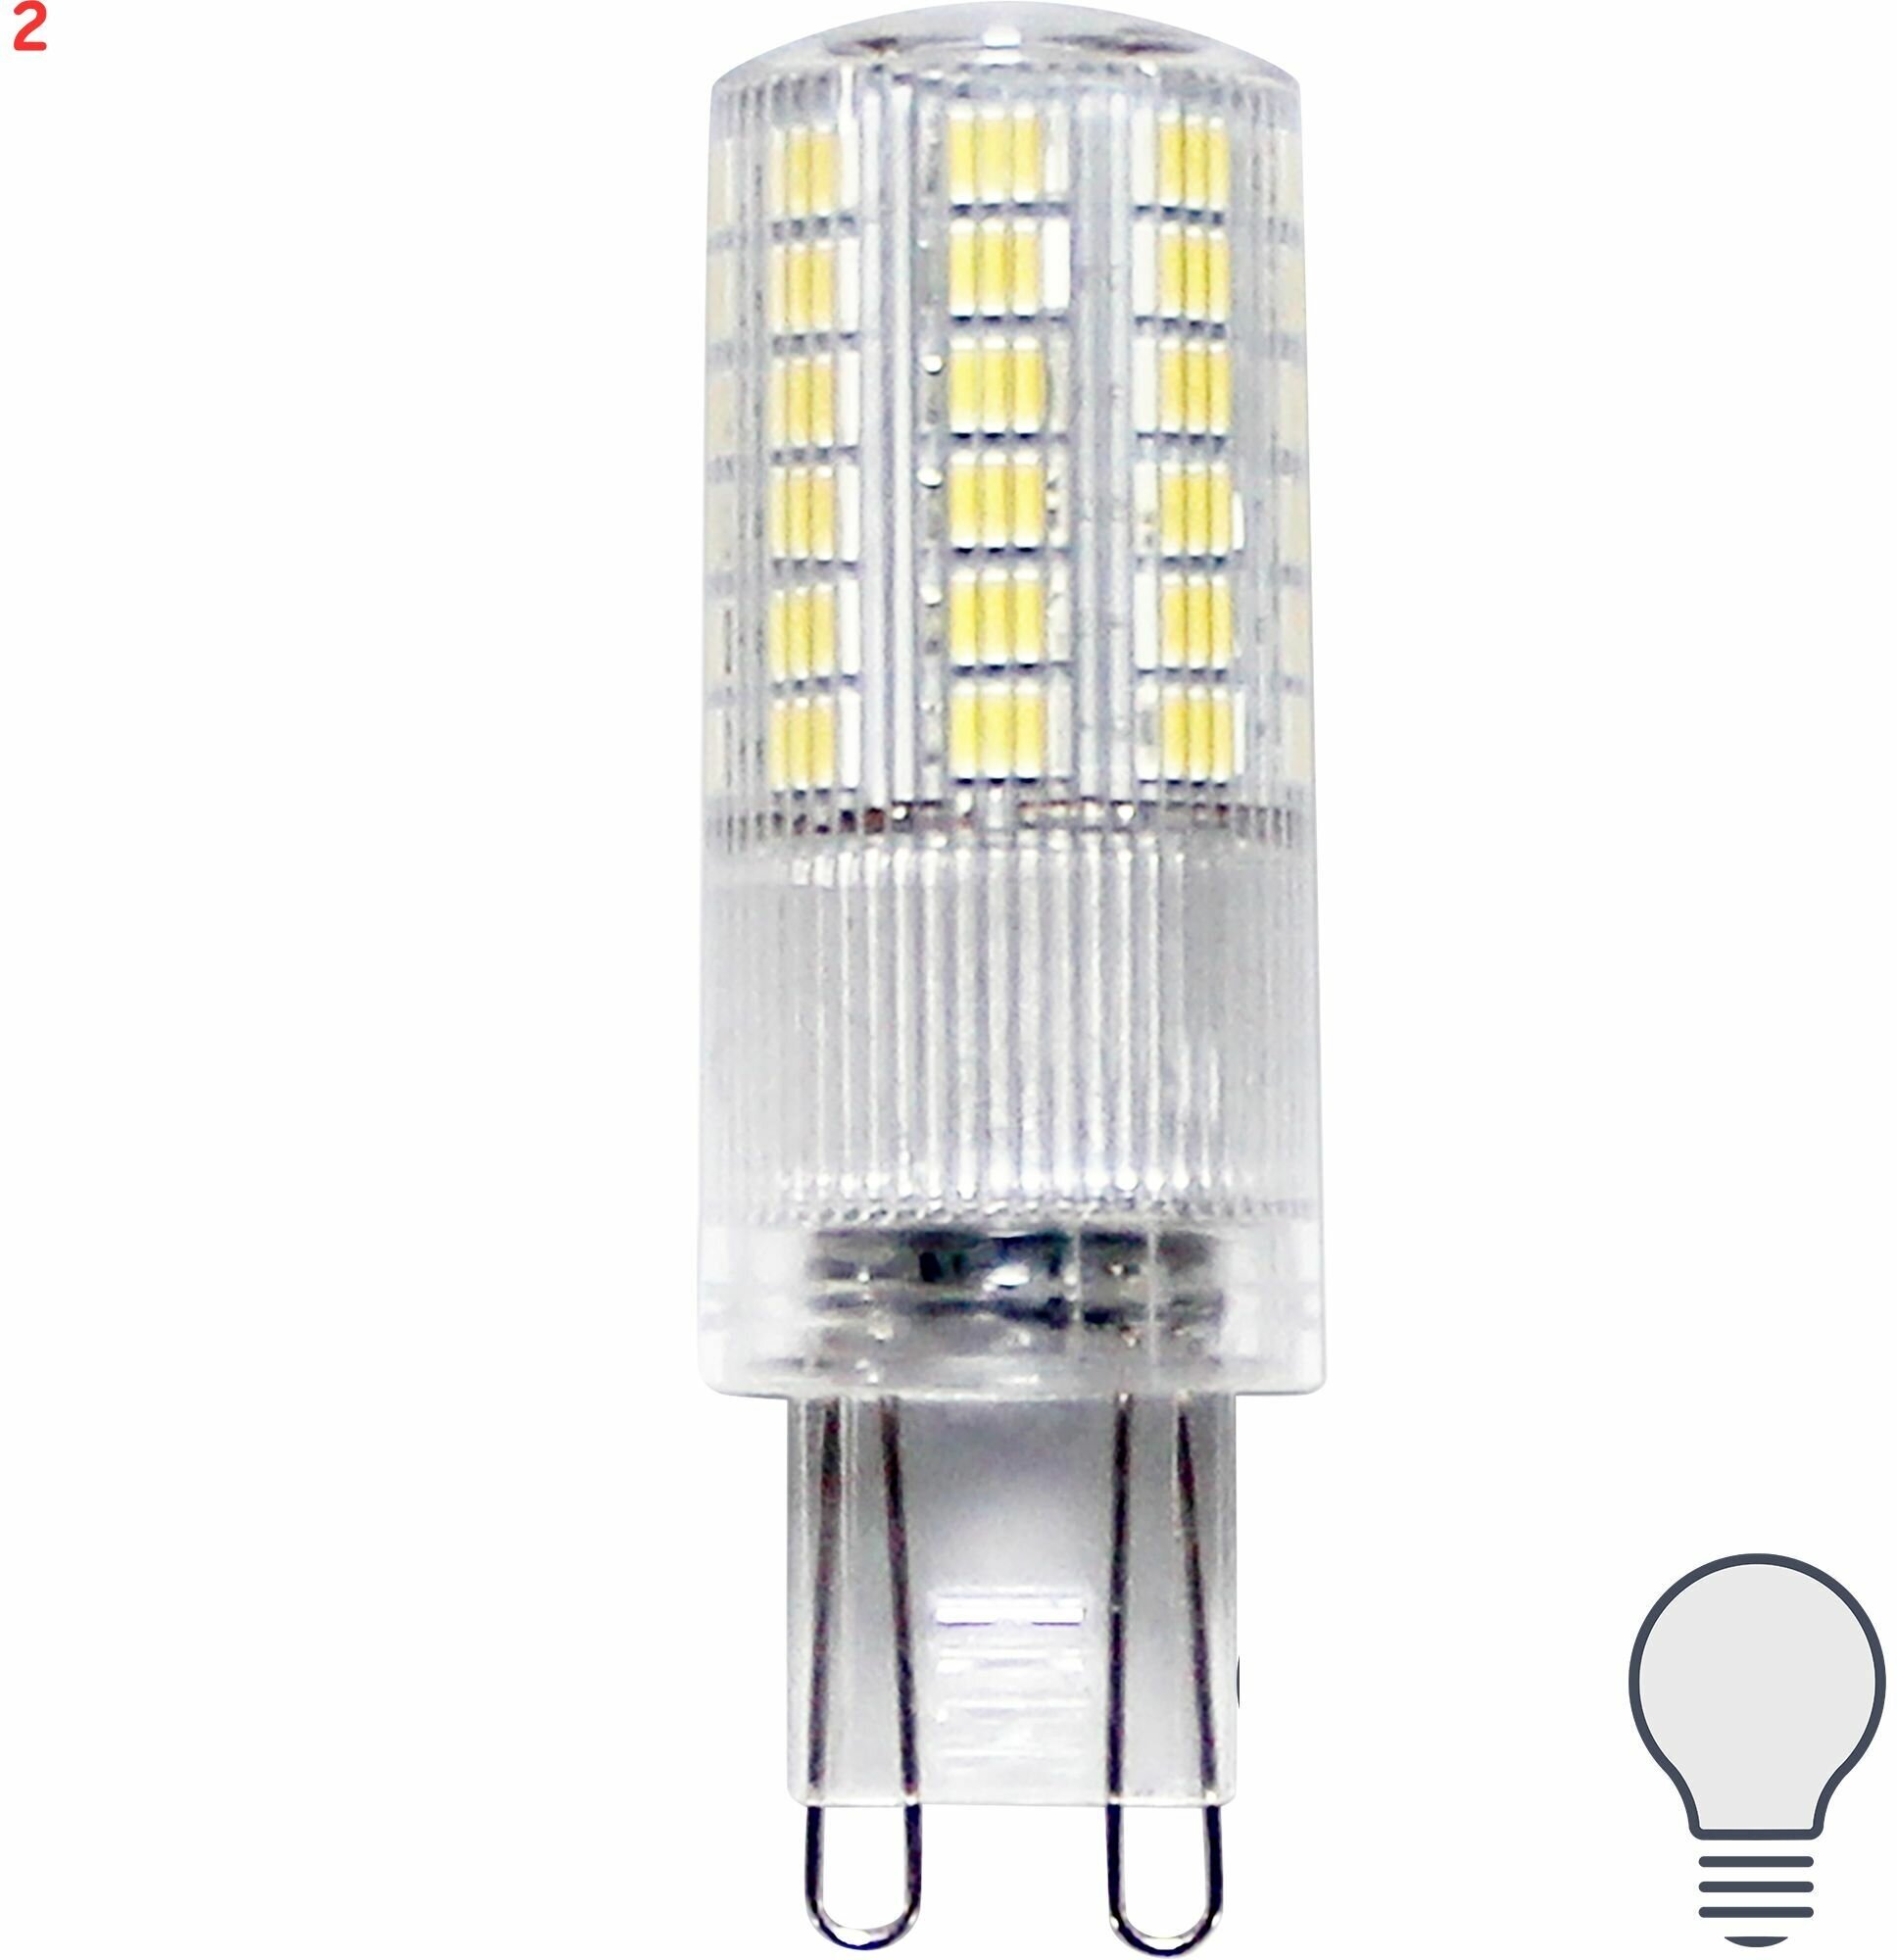 Лампа светодиодная G9 170-240 В 4 Вт капсула прозрачная 400 лм нейтральный белый свет (2 шт.)